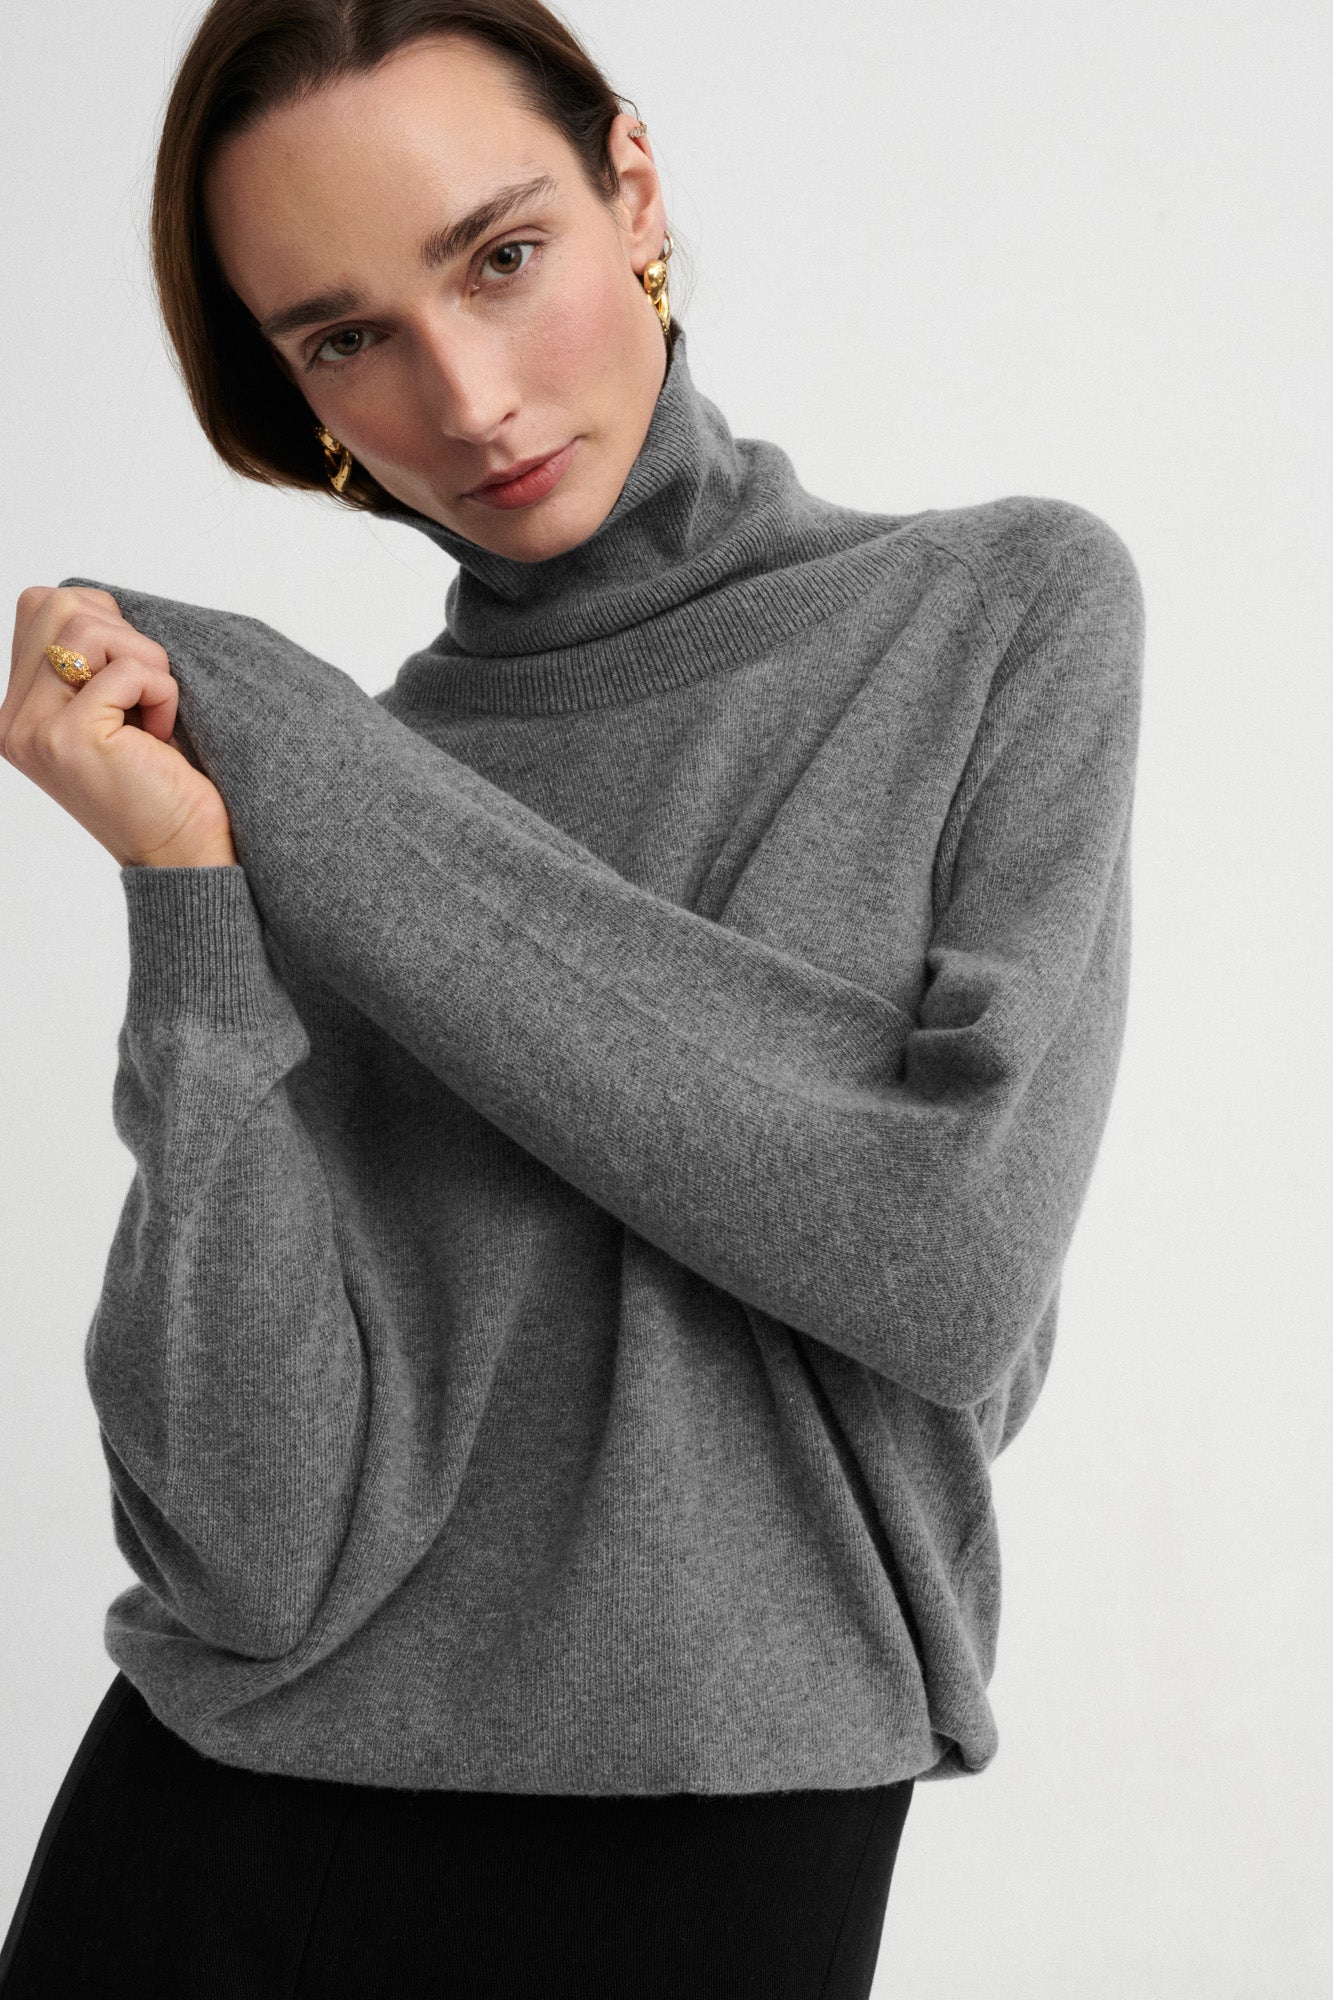 Sweater in merino wool / 16 / 13 / grey stone